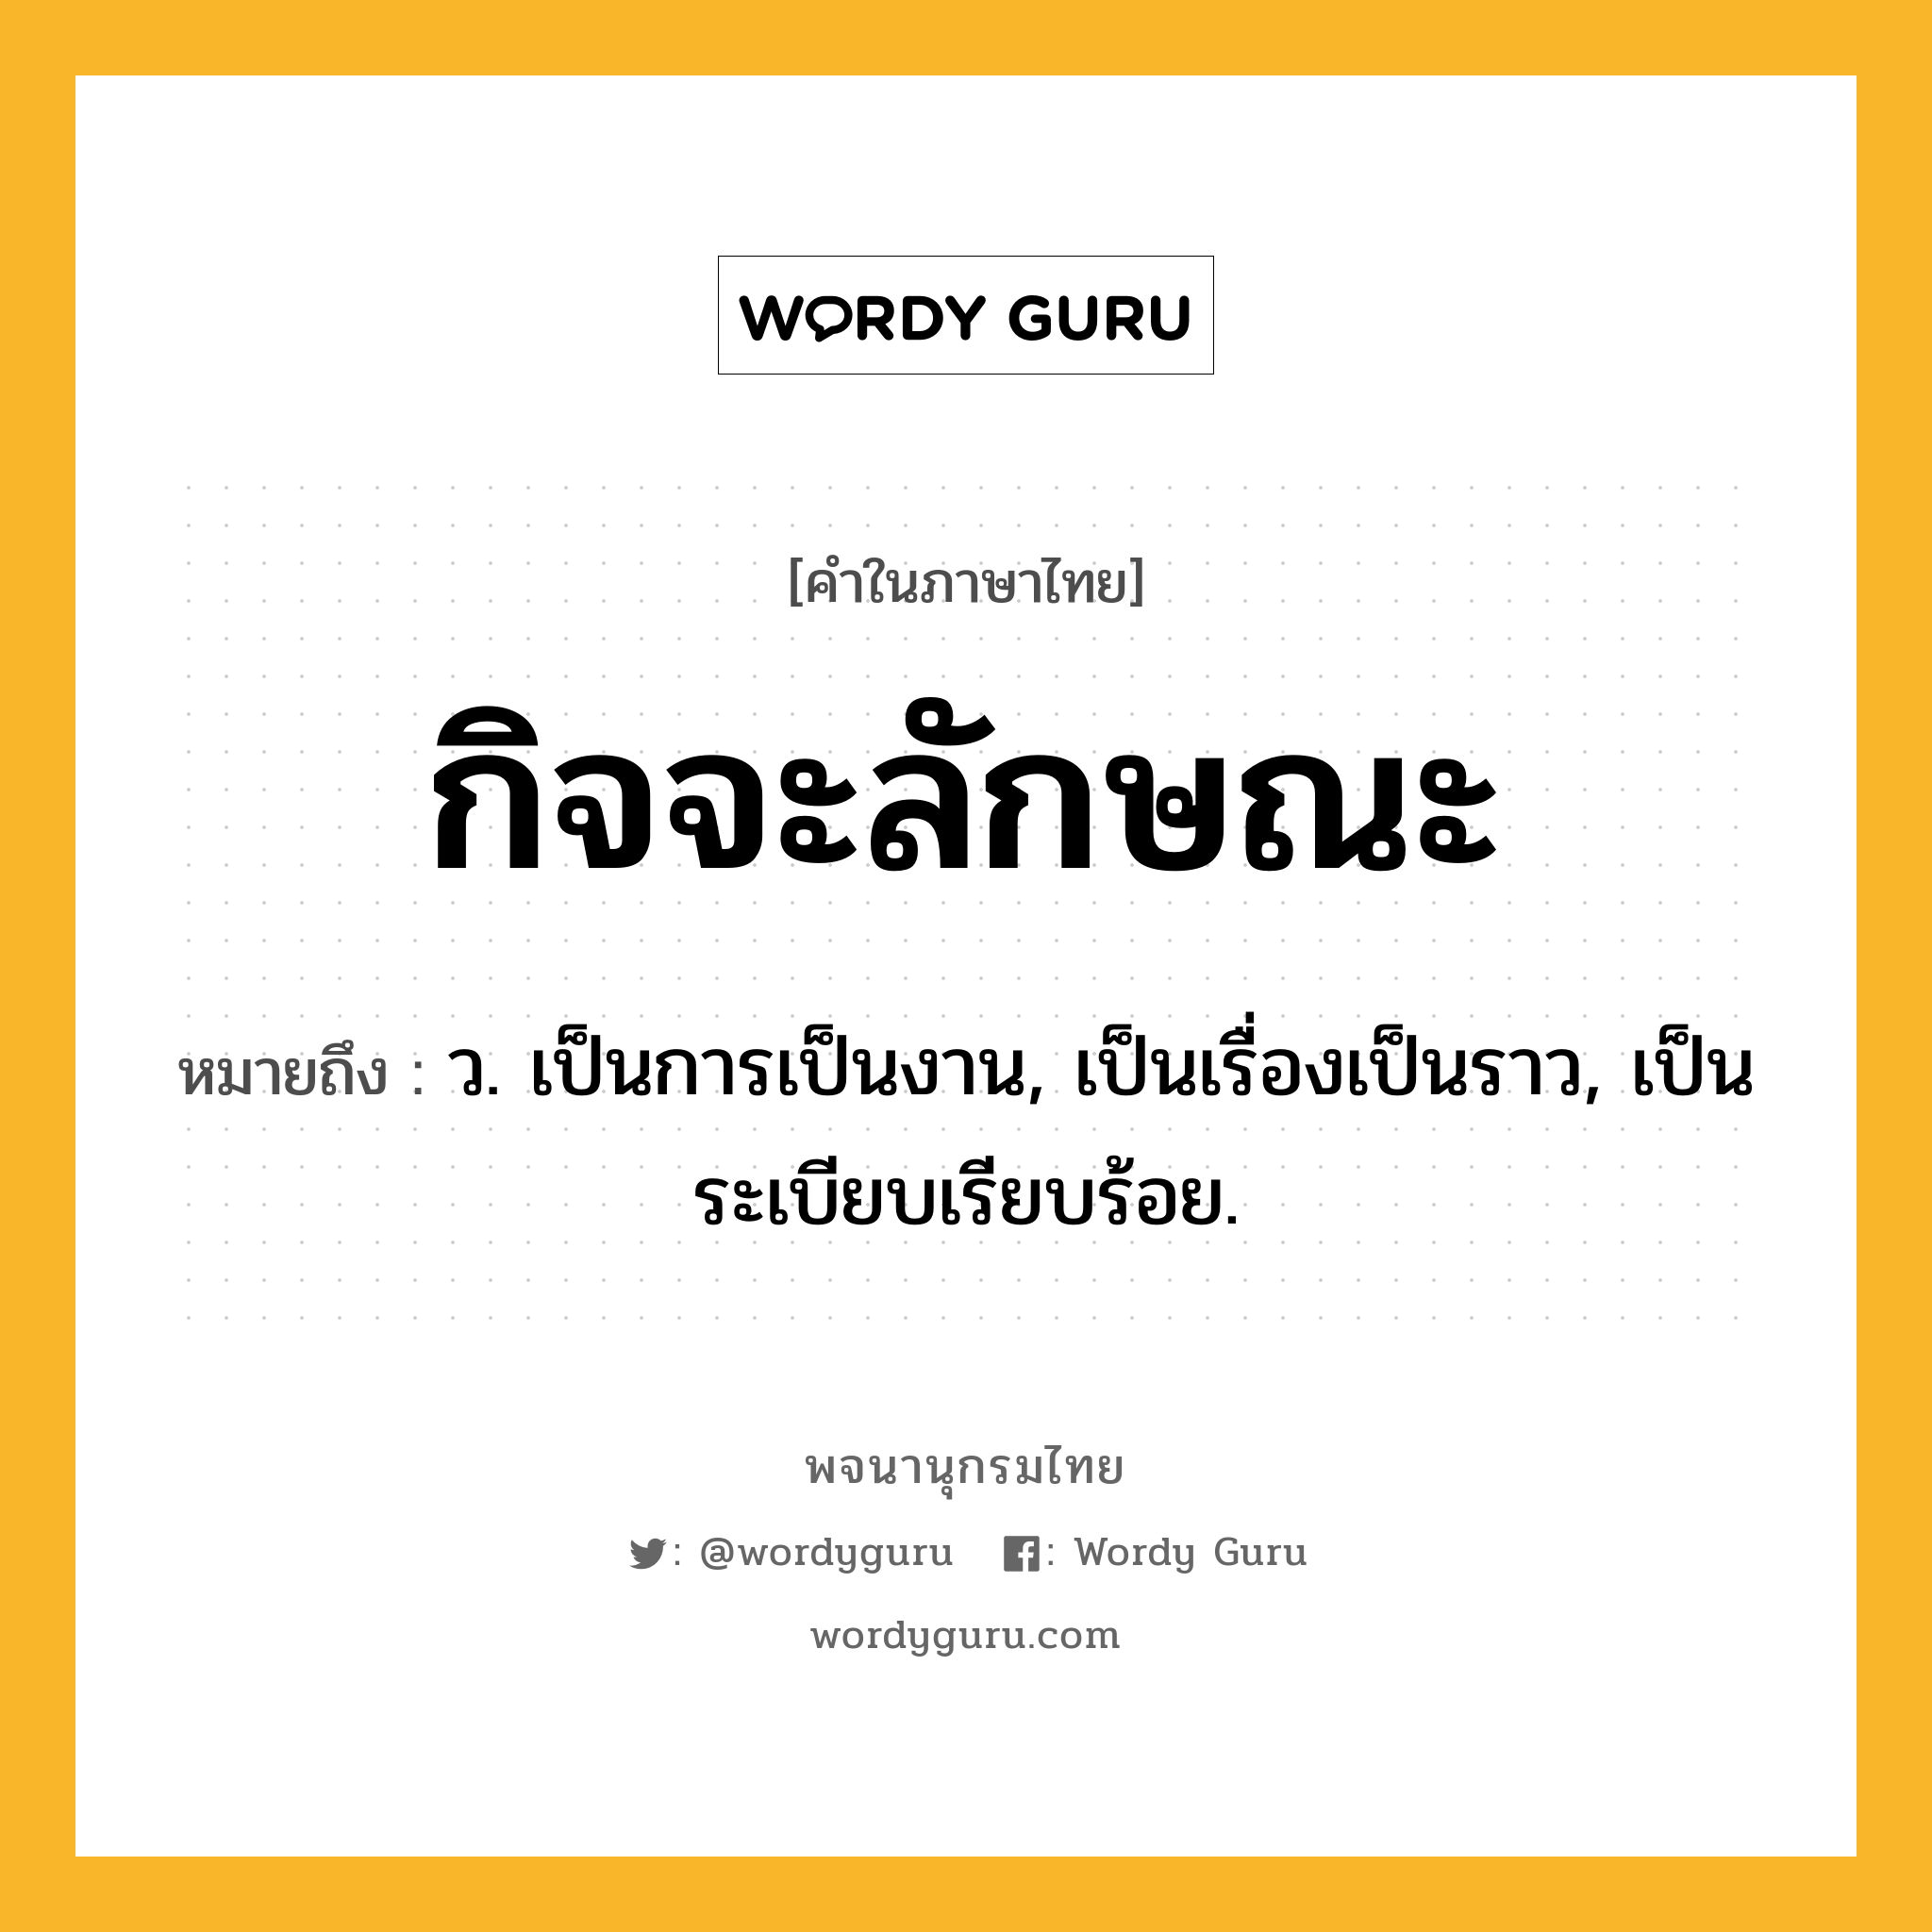 กิจจะลักษณะ ความหมาย หมายถึงอะไร?, คำในภาษาไทย กิจจะลักษณะ หมายถึง ว. เป็นการเป็นงาน, เป็นเรื่องเป็นราว, เป็นระเบียบเรียบร้อย.